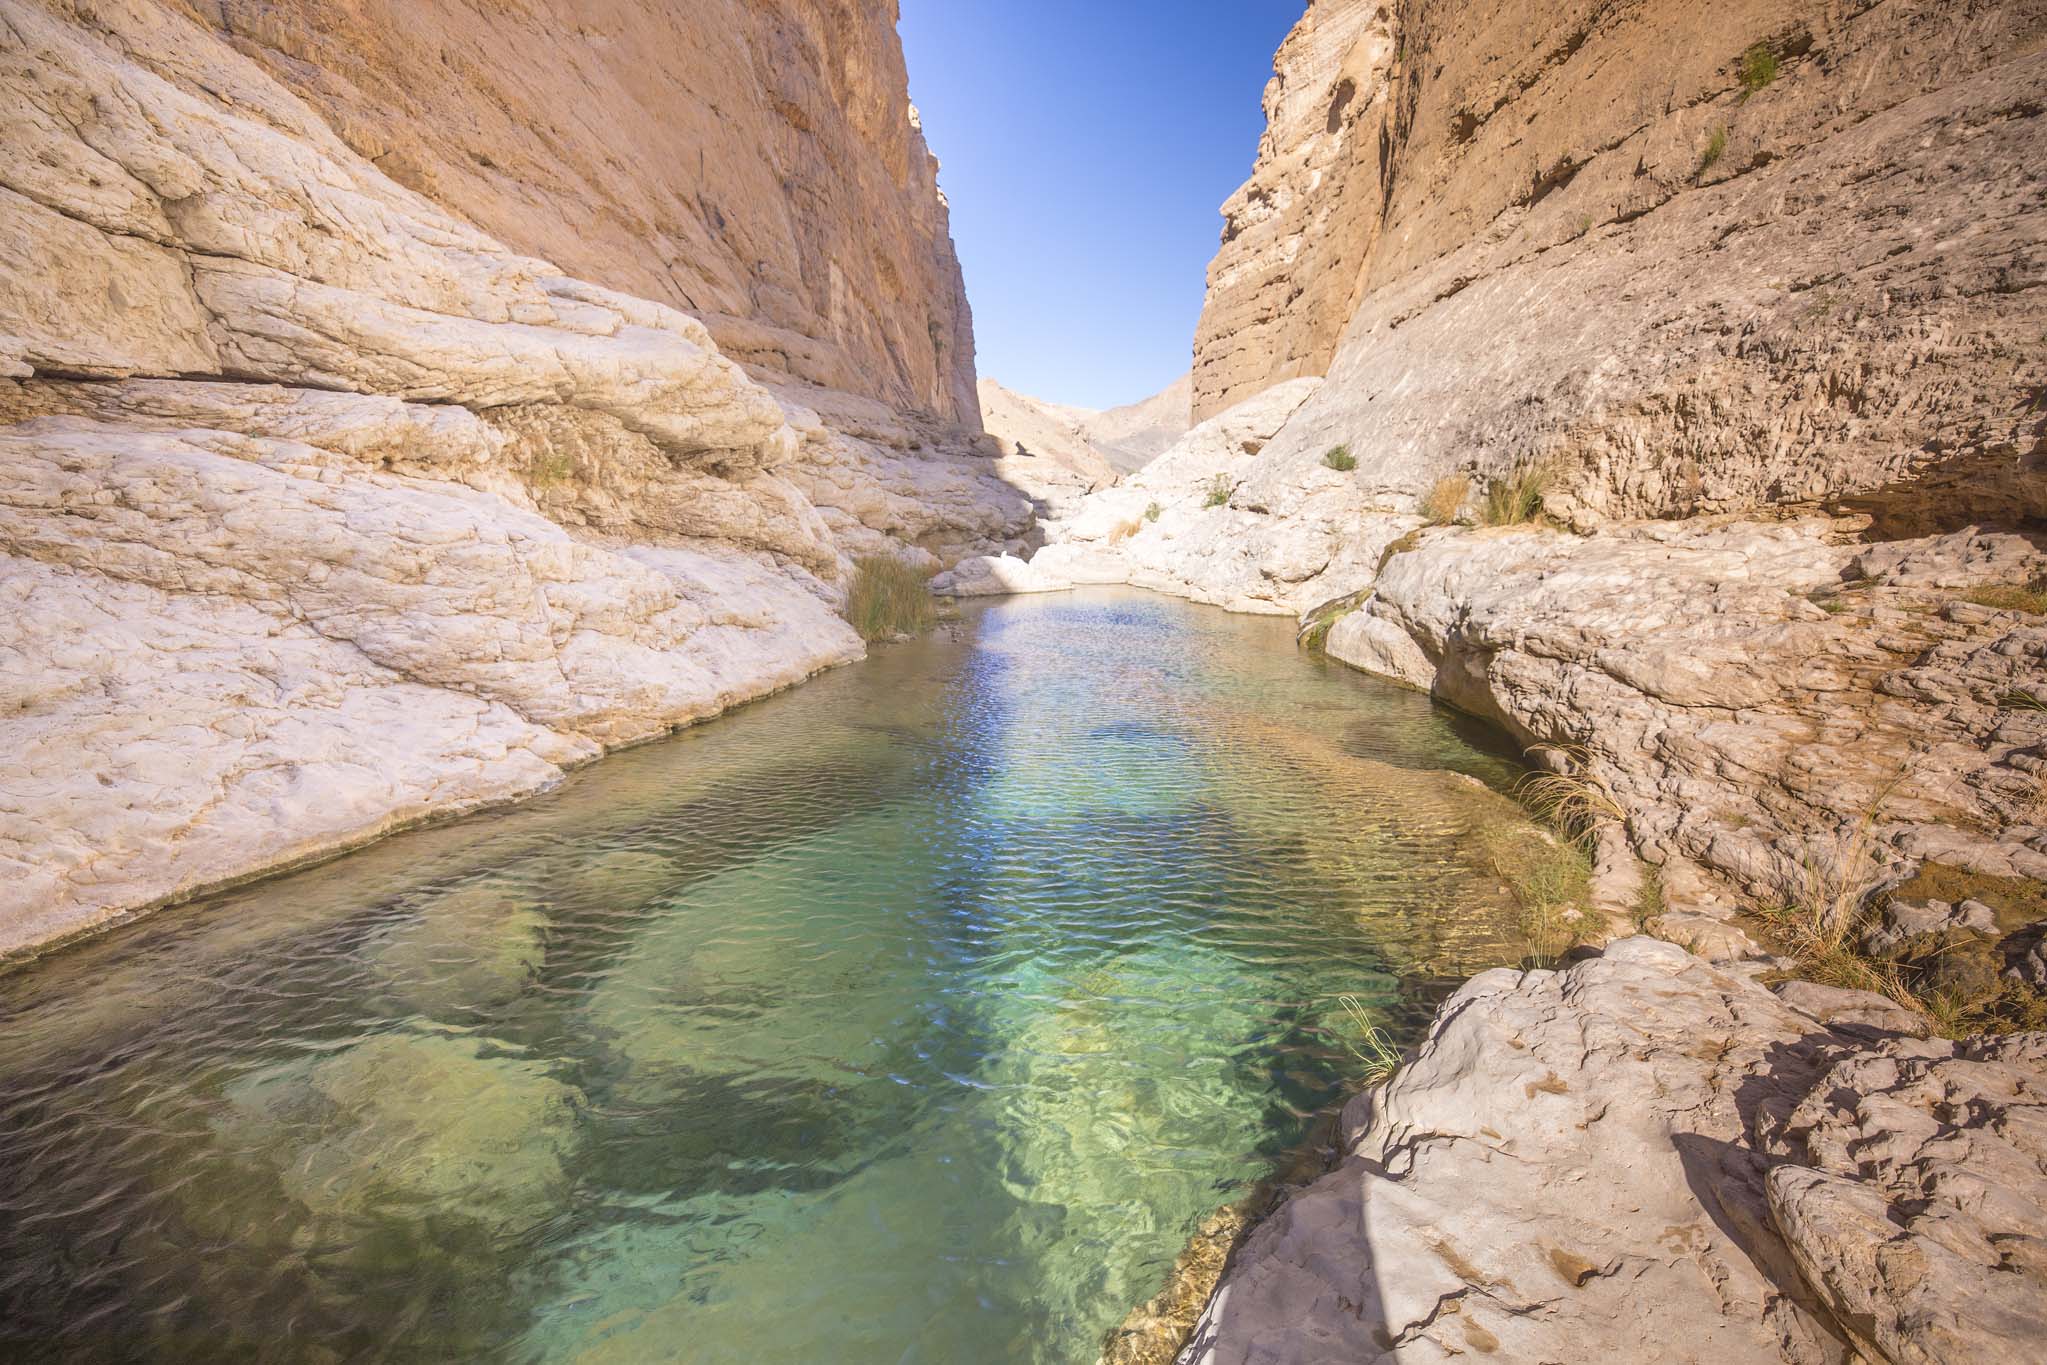 The Wadi